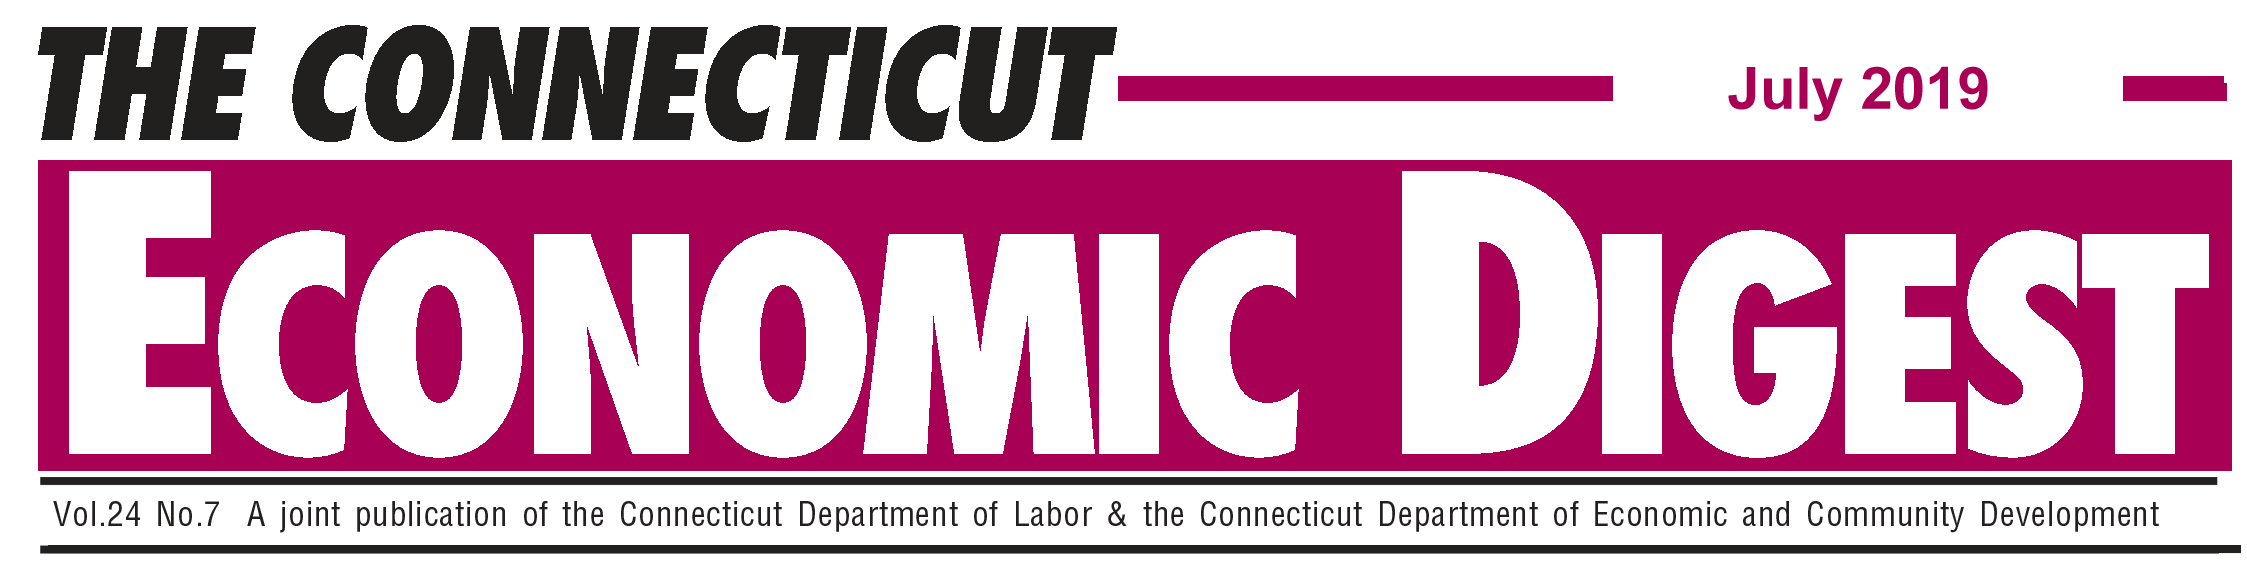 July 2019 Connecticut Economic Digest